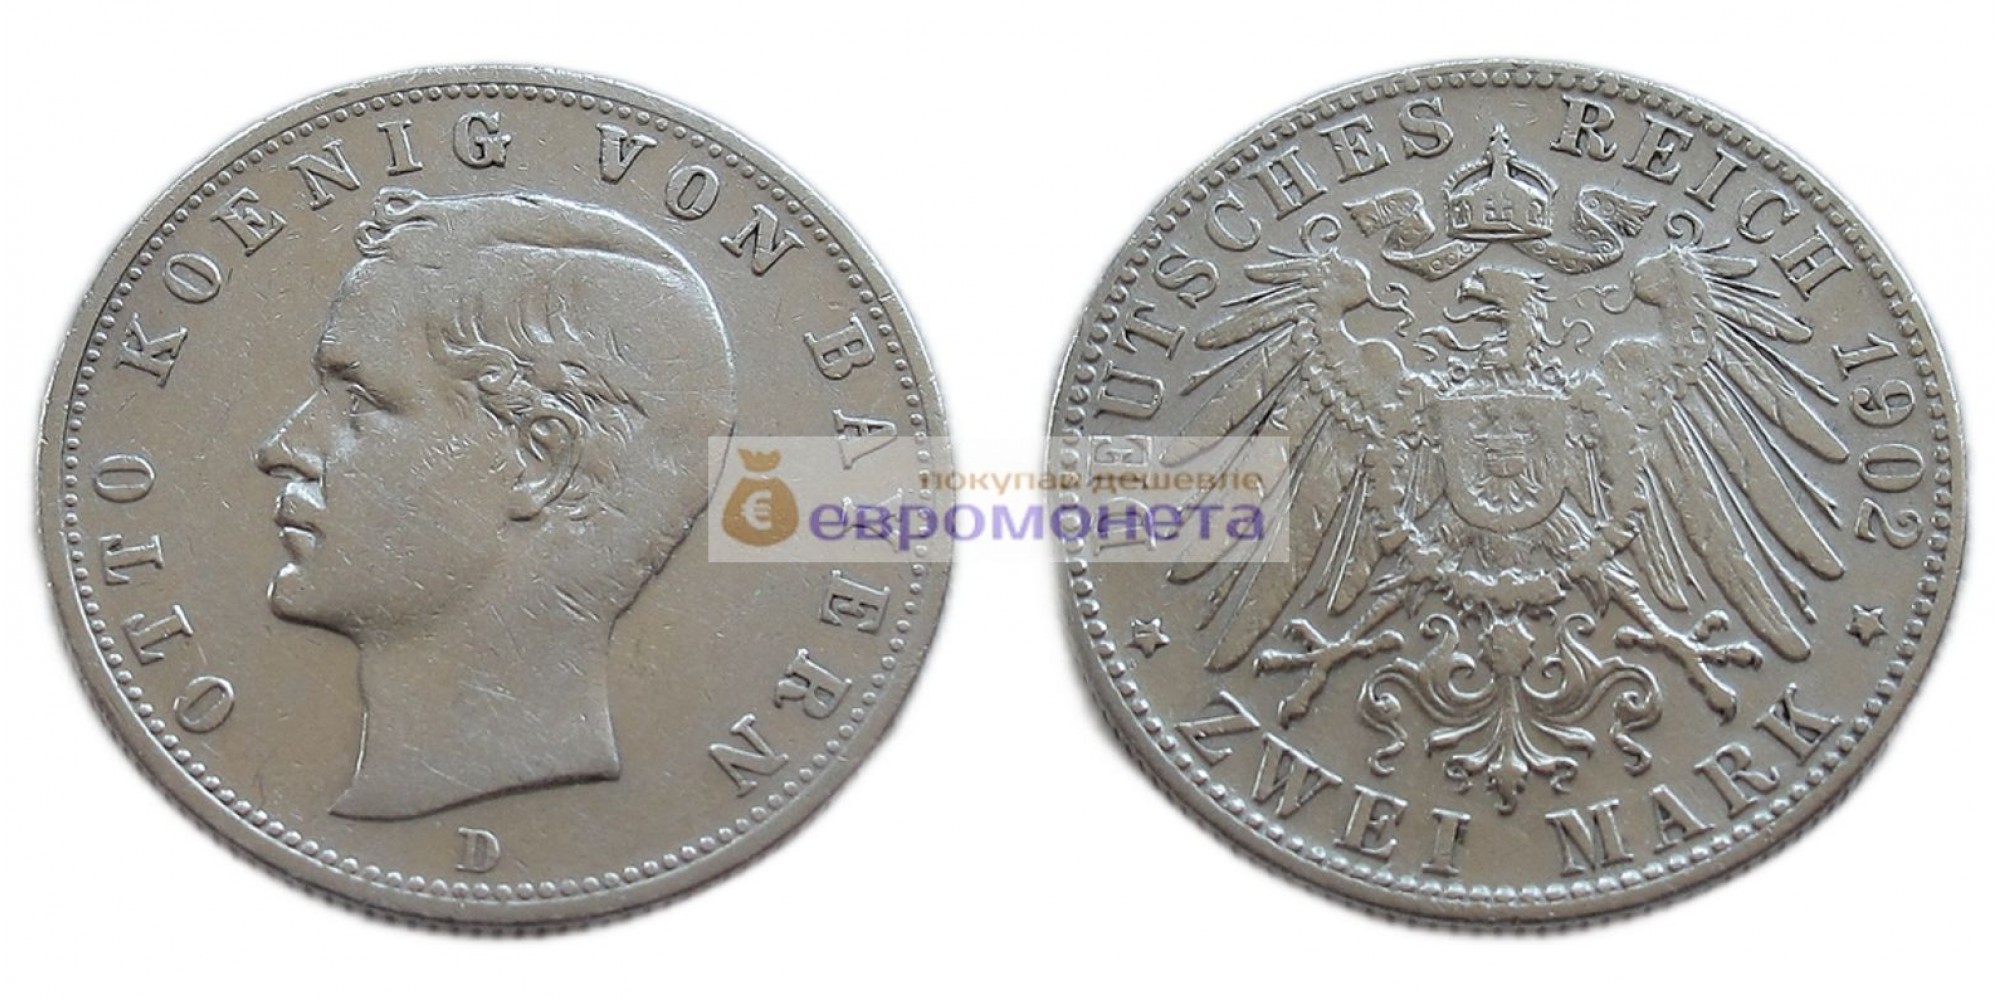 Германская империя Бавария 2 марки 1902 год "D" Отто. Серебро.